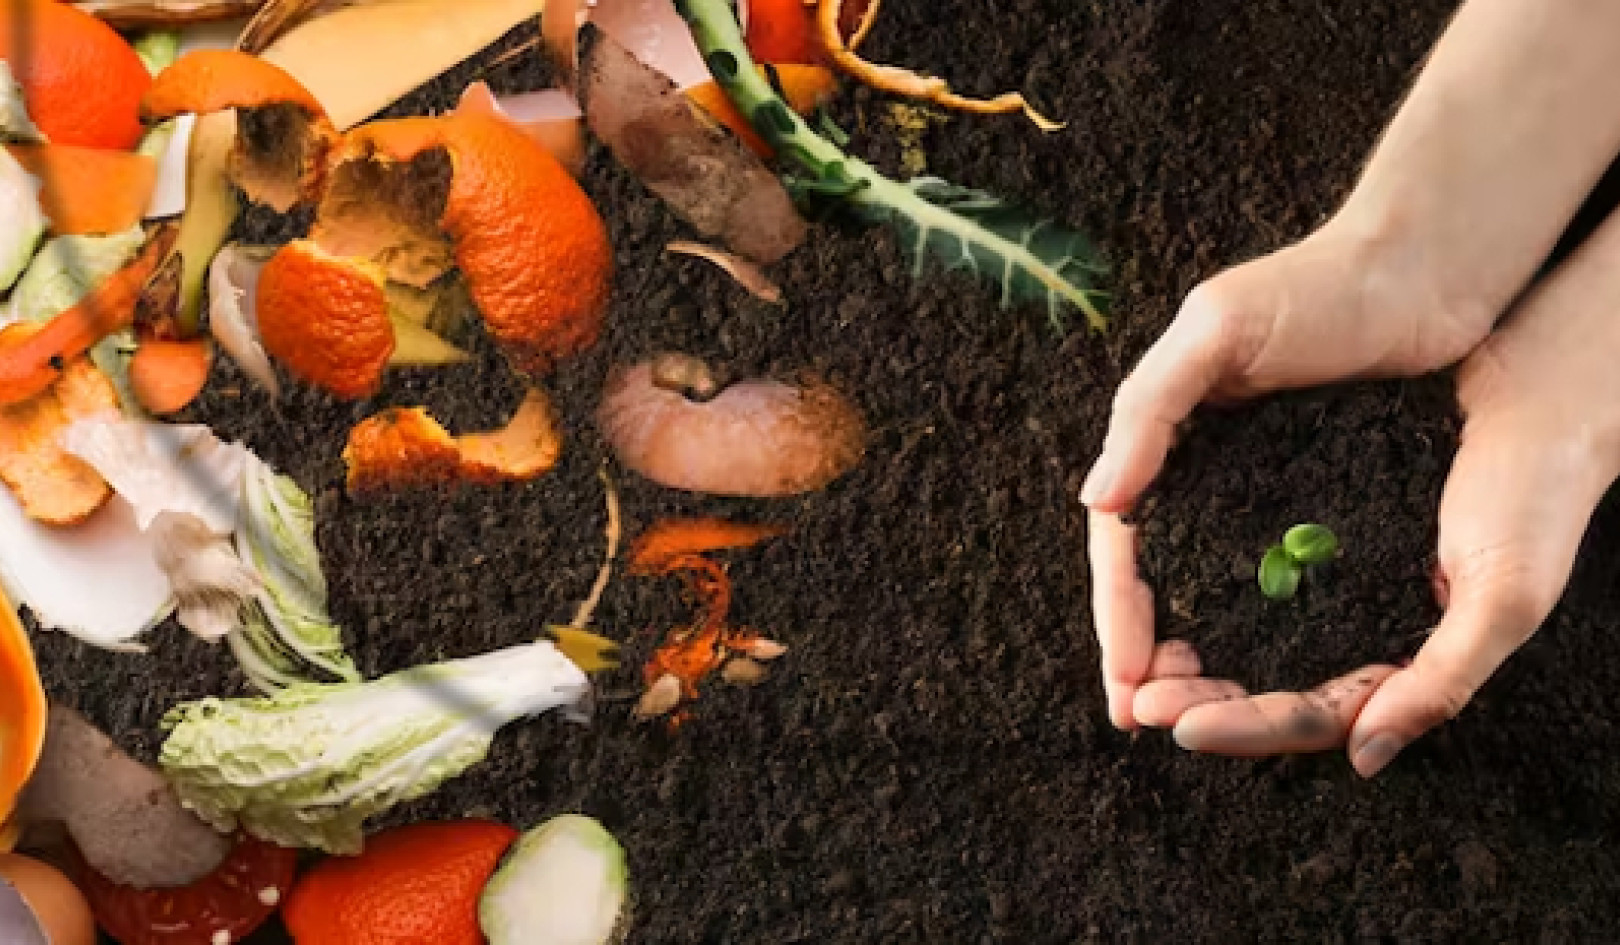 Von Abfall zu Reichtum: Warum die Kompostierung von Lebensmittelabfällen die Deponierung übertrifft